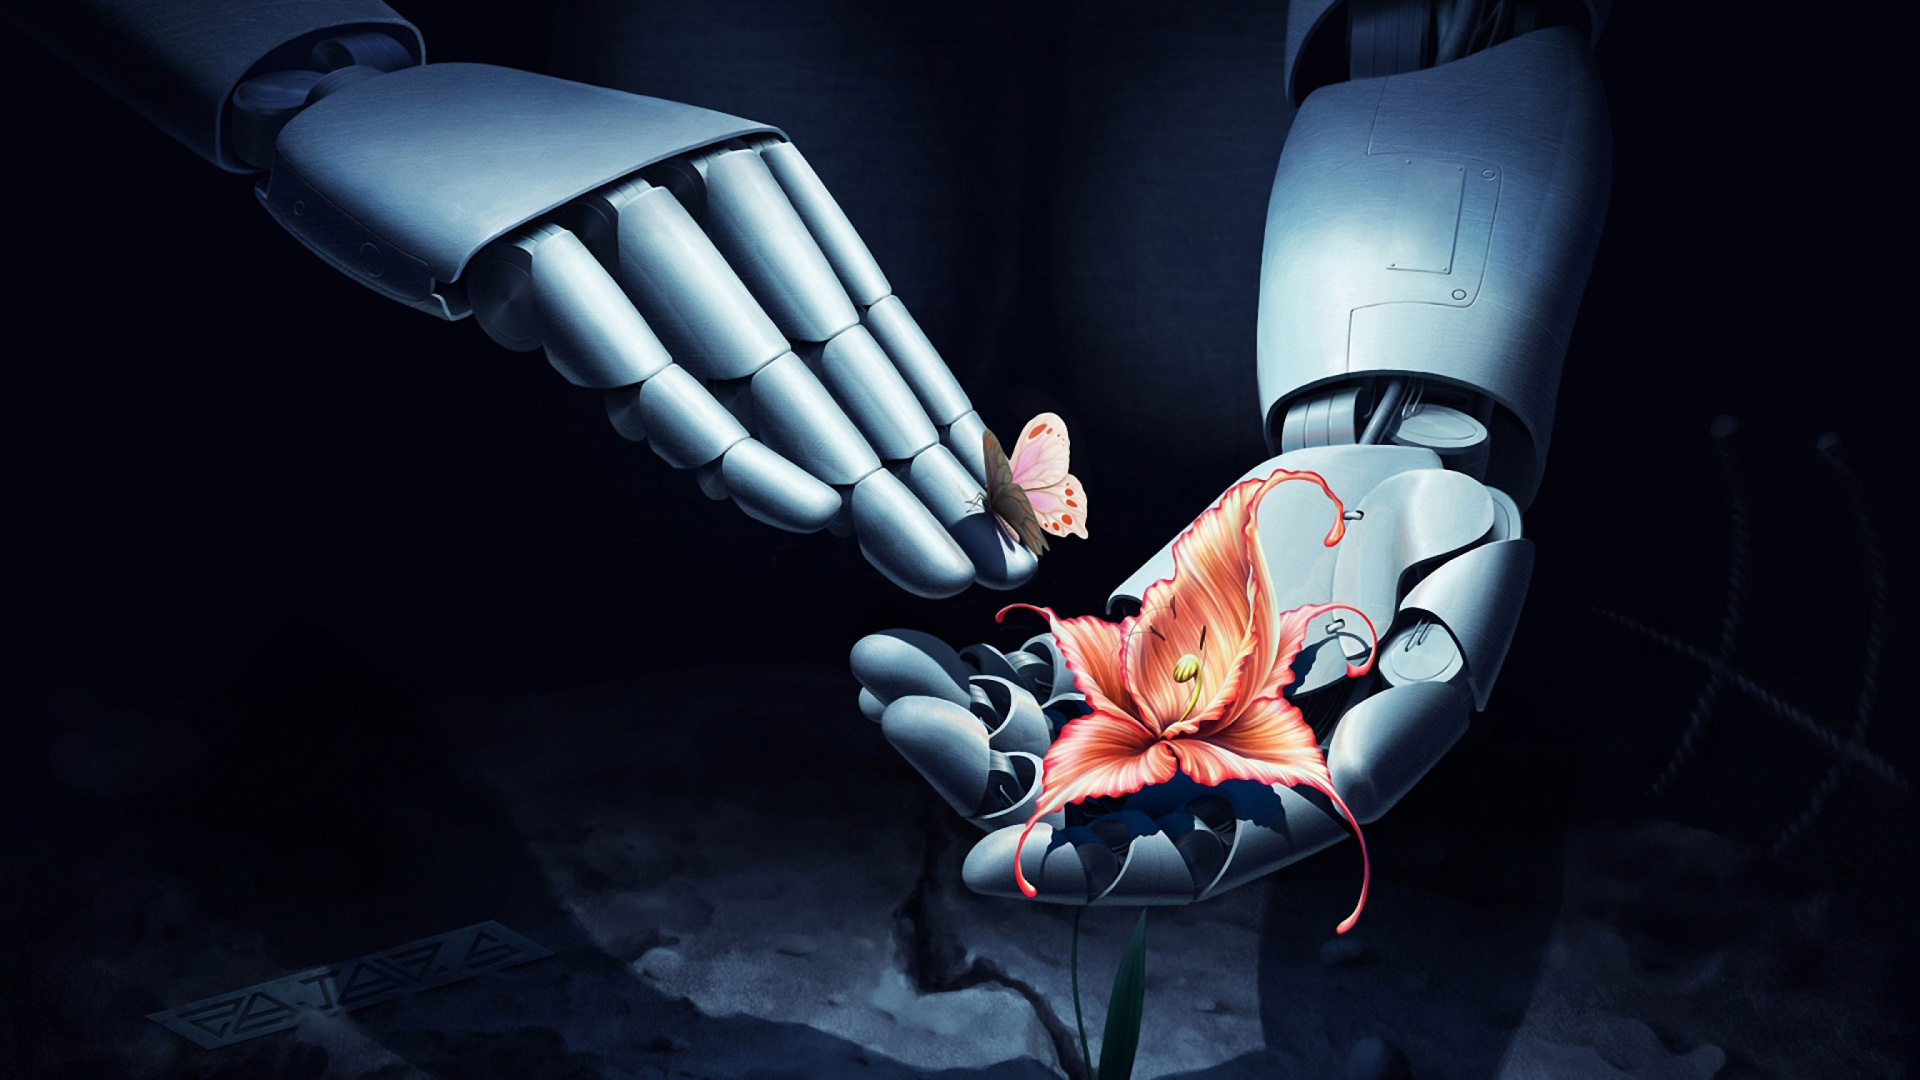 Art Robot Hand with Flower screenshot #1 1920x1080